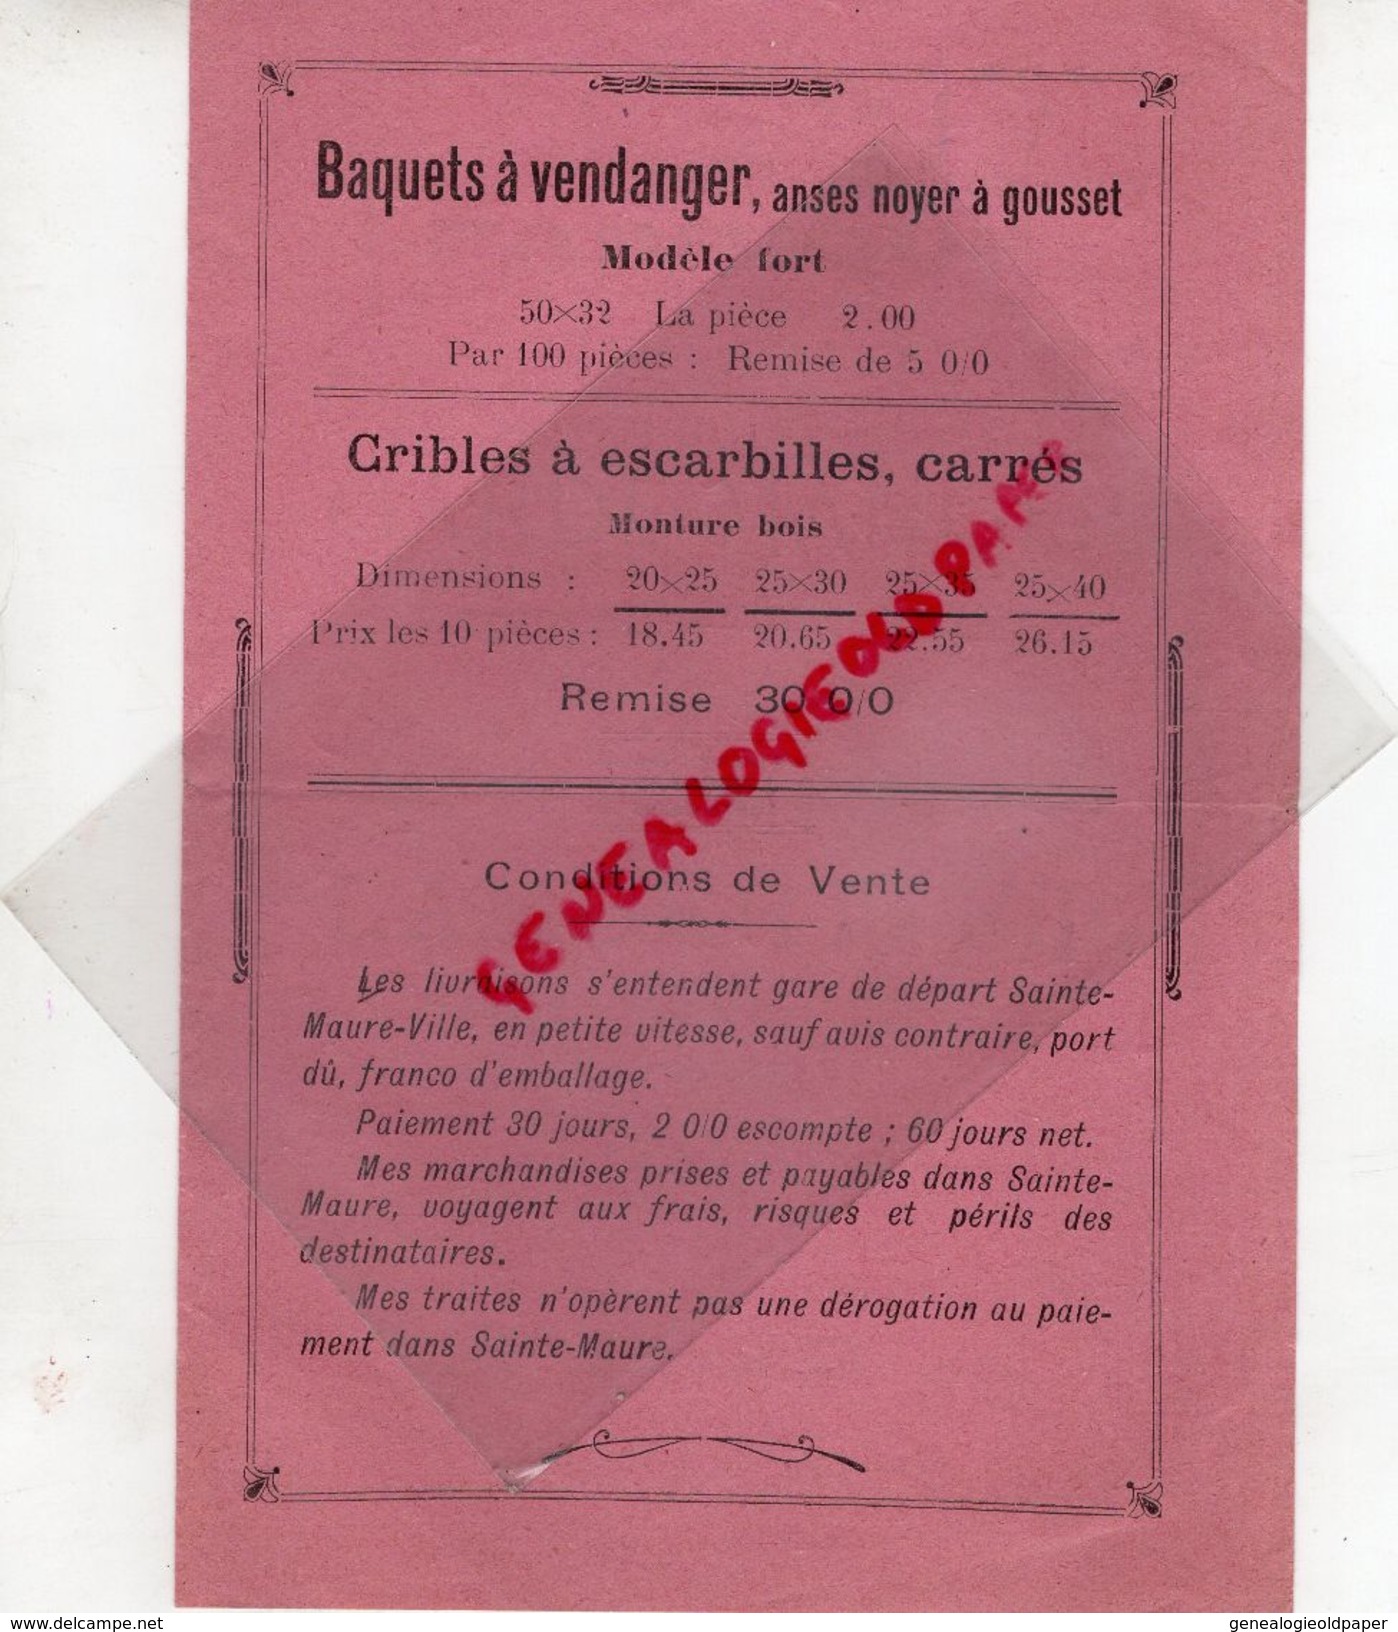 37- SAINTE MAURE DE TOURAINE- RARE CATALOGUE FABRIQUE GARDE MANGER-LAMBERT FILS-1923- IMPRIMERIE LIBRAIRIE J.RICHARD - Petits Métiers